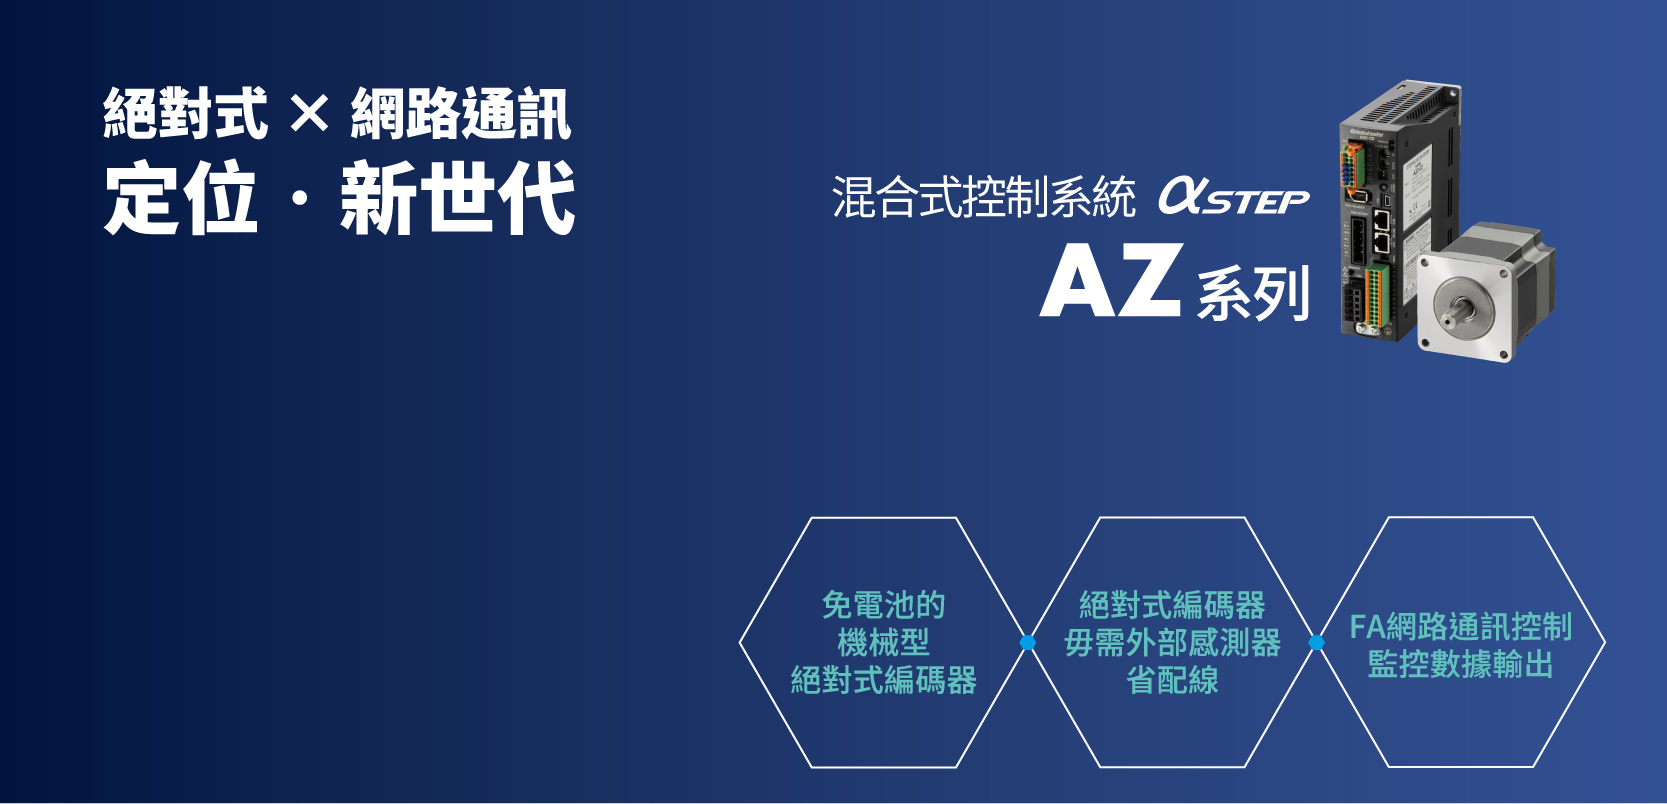 αSTEP AZ系列 – 結合FA網路通訊與狀態輸出的絕佳產品 _ 廣億科技